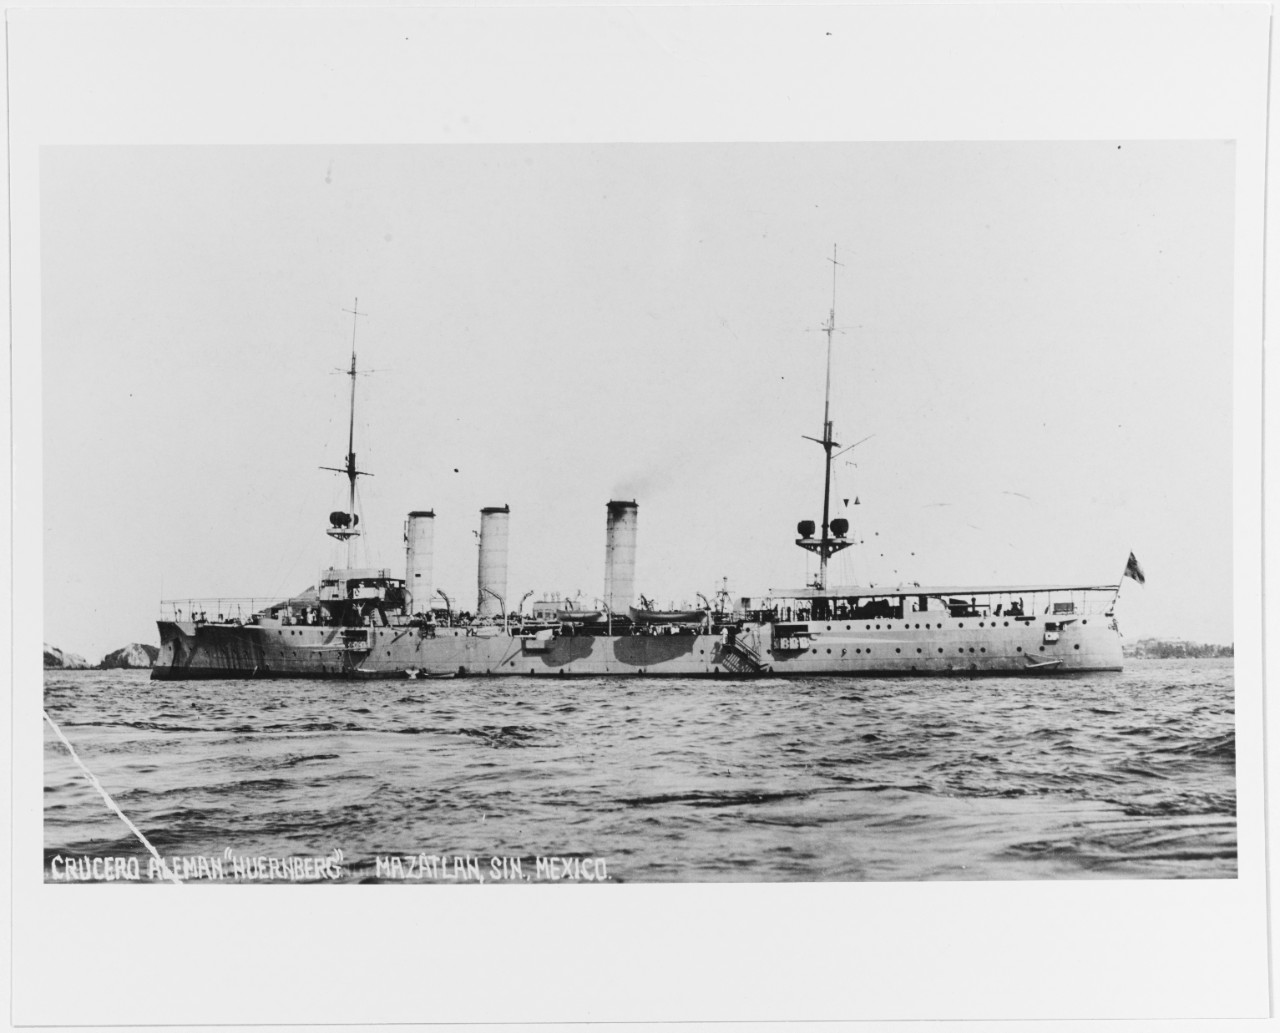 SMS NUERNBERG (German cruiser, 1906)